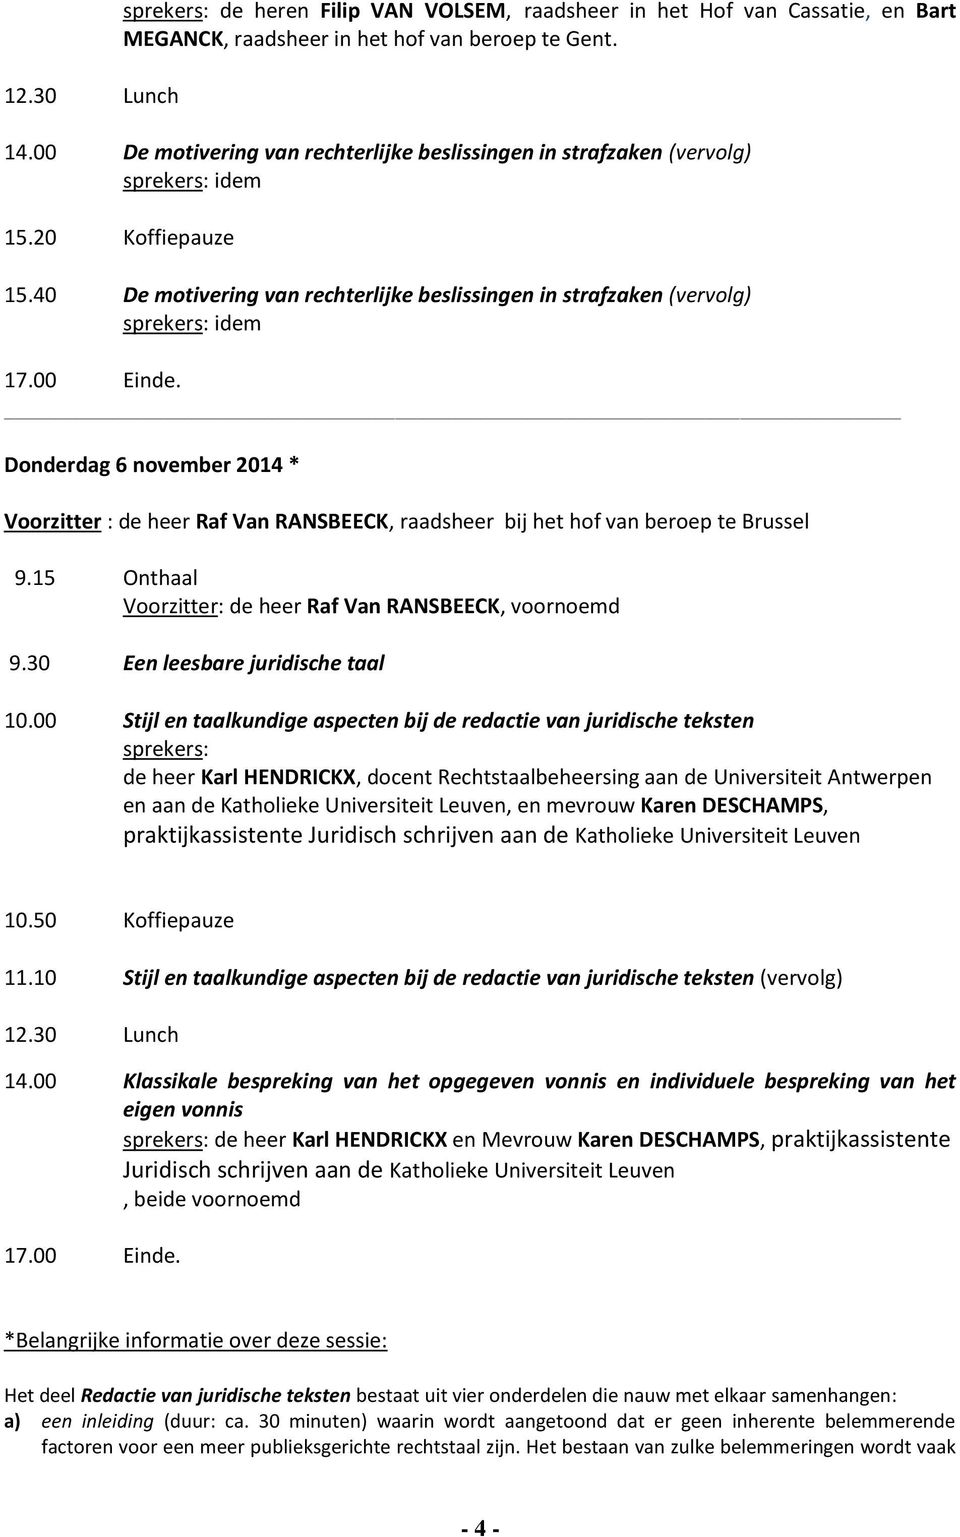 40 De motivering van rechterlijke beslissingen in strafzaken (vervolg) sprekers: idem Donderdag 6 november 2014 * de heer Raf Van RANSBEECK, raadsheer bij het hof van beroep te Brussel Voorzitter: de